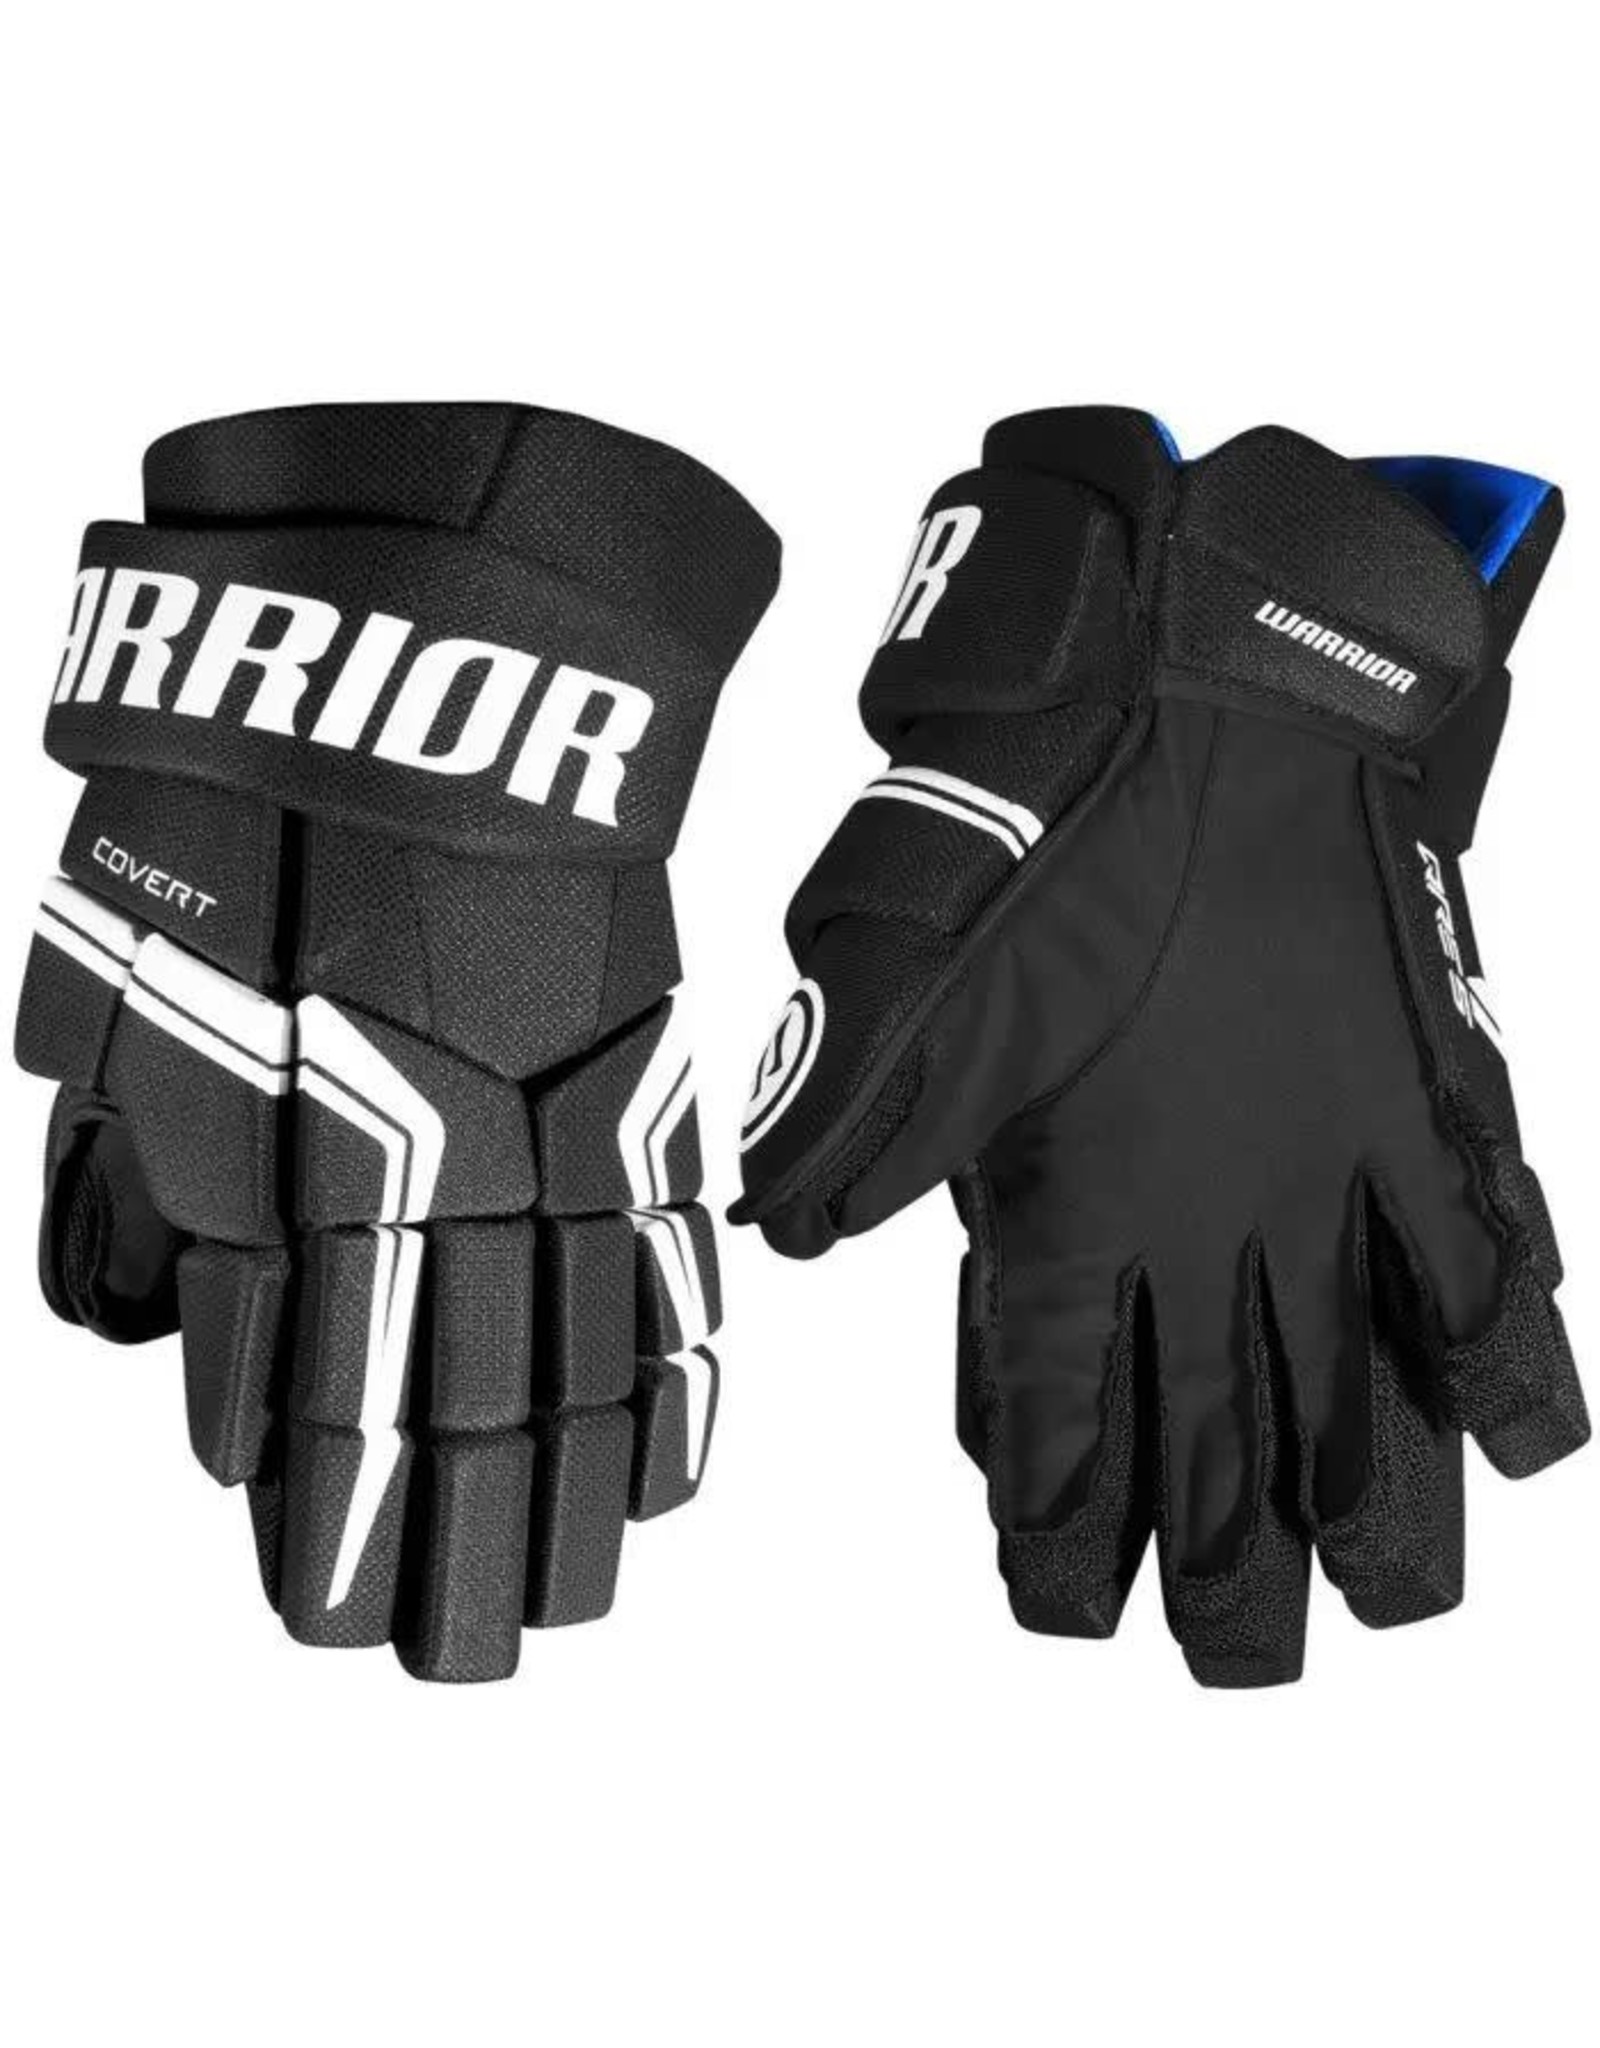 WARRIOR Covert QRE 5, Senior, Hockey Gloves